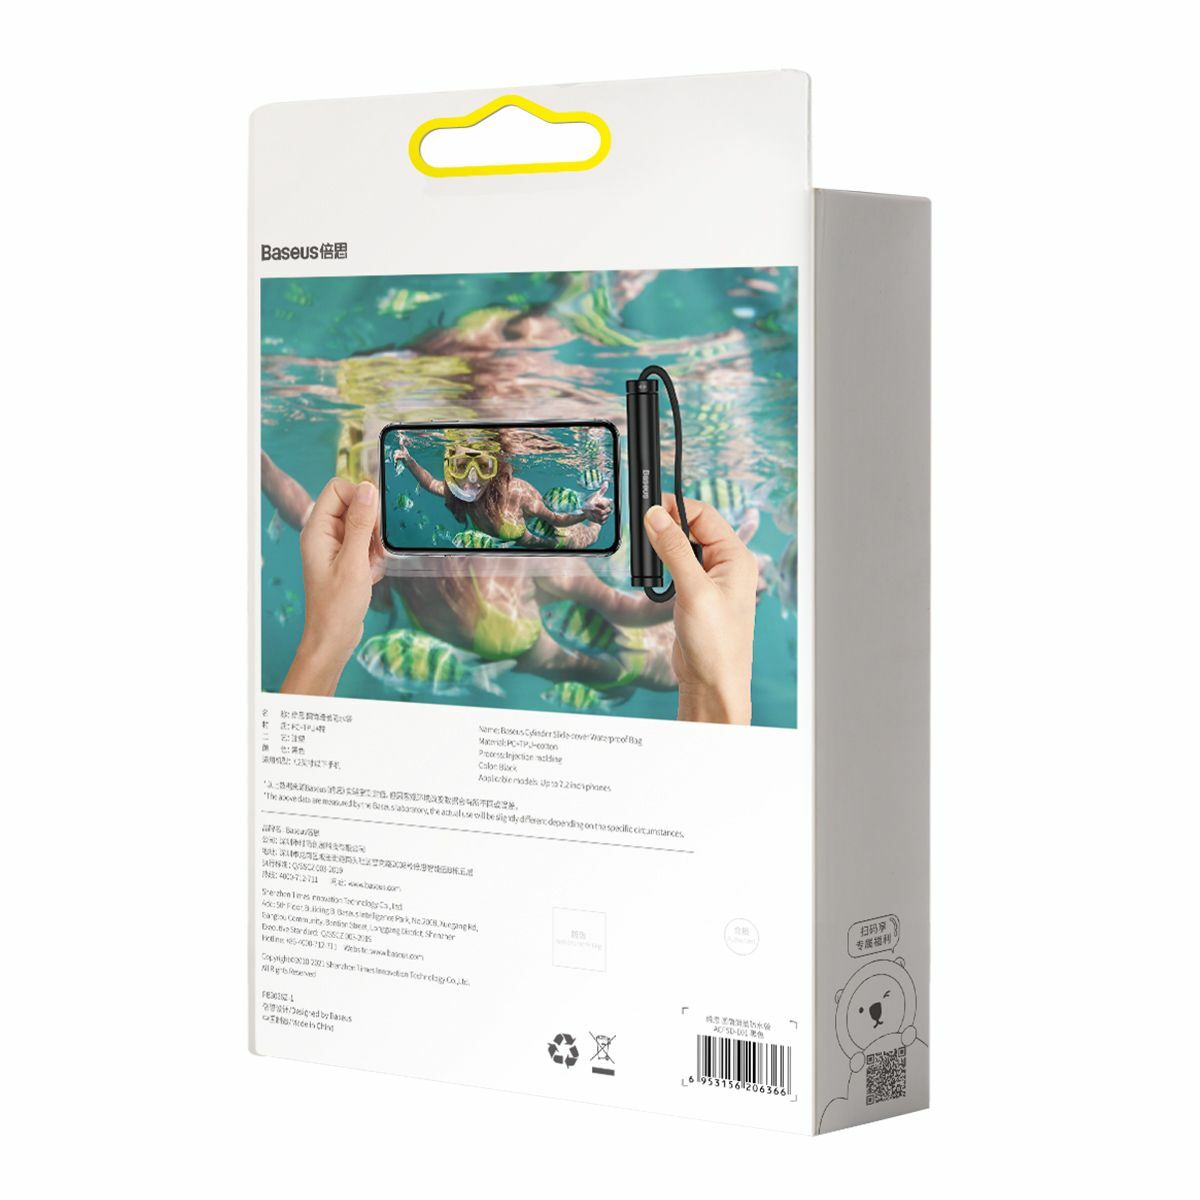 Kép 3/13 - Baseus mobiltelefon tok, Cylinder Slide-cover, vízálló, max 7,2 inch méretig, fekete (ACFSD-E01)